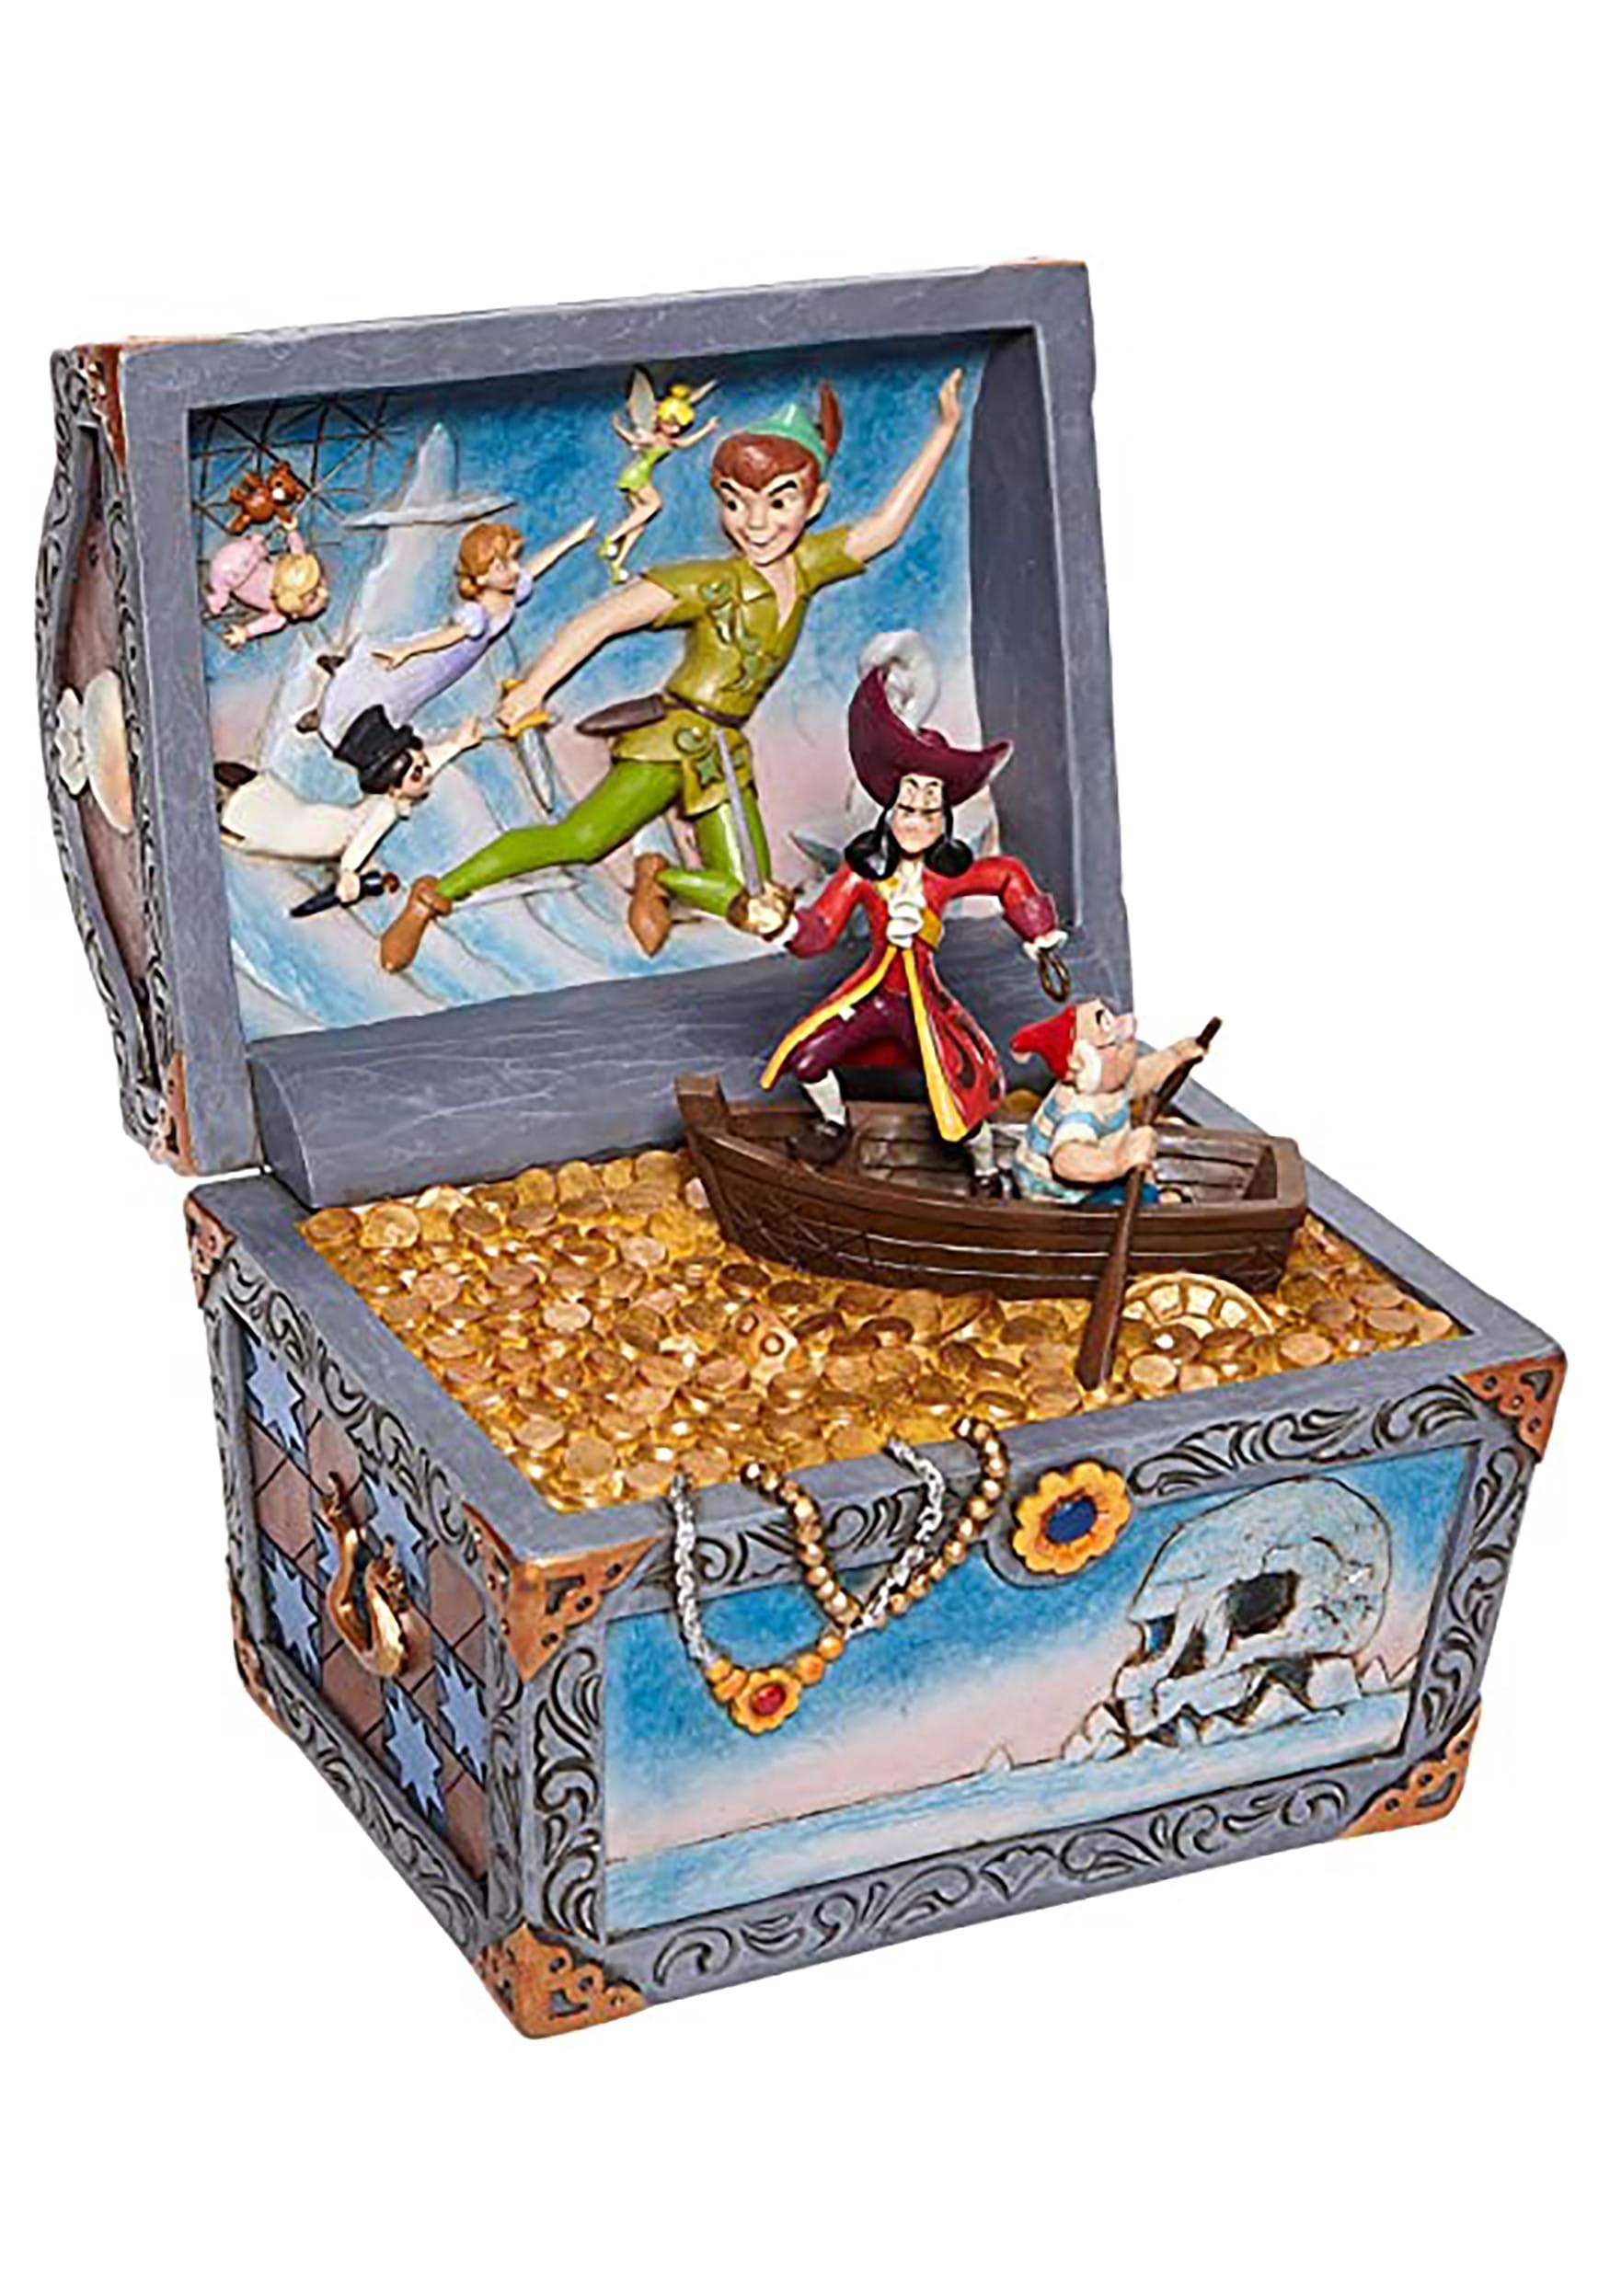 Peter Pan Treasure Chest Jim Shore Diorama